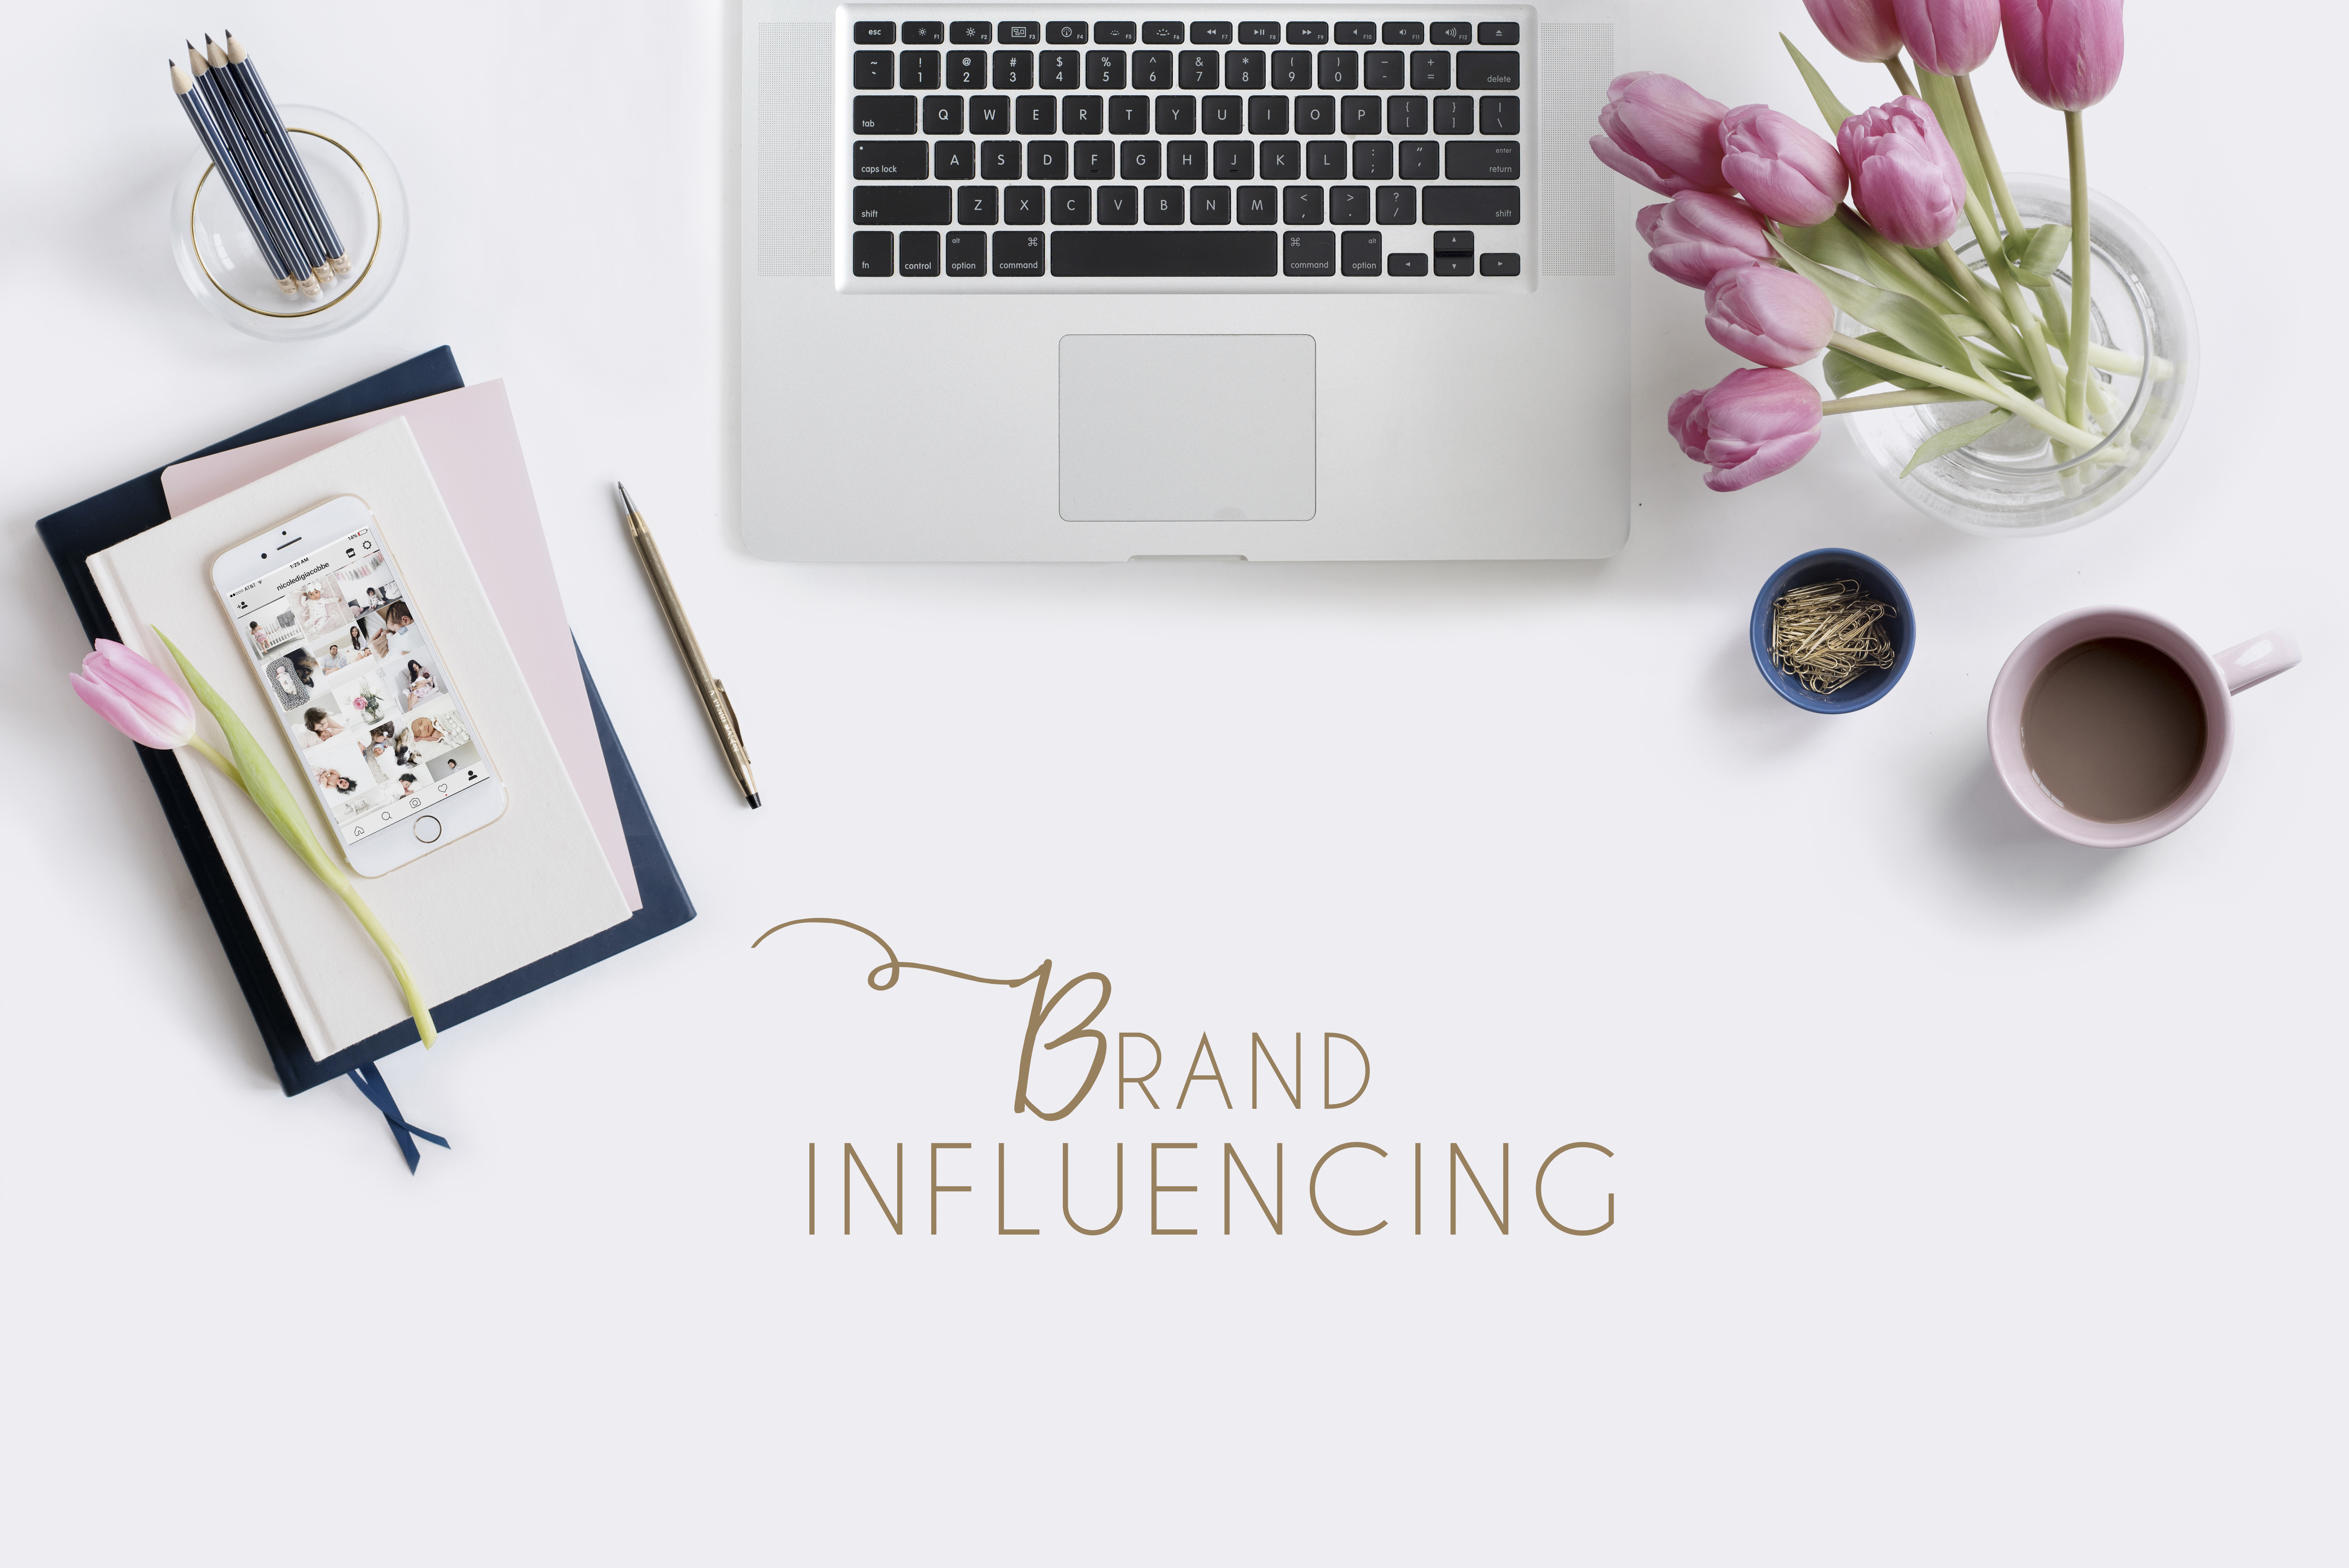 Brand-Influencing-social-media-marketing-instagram